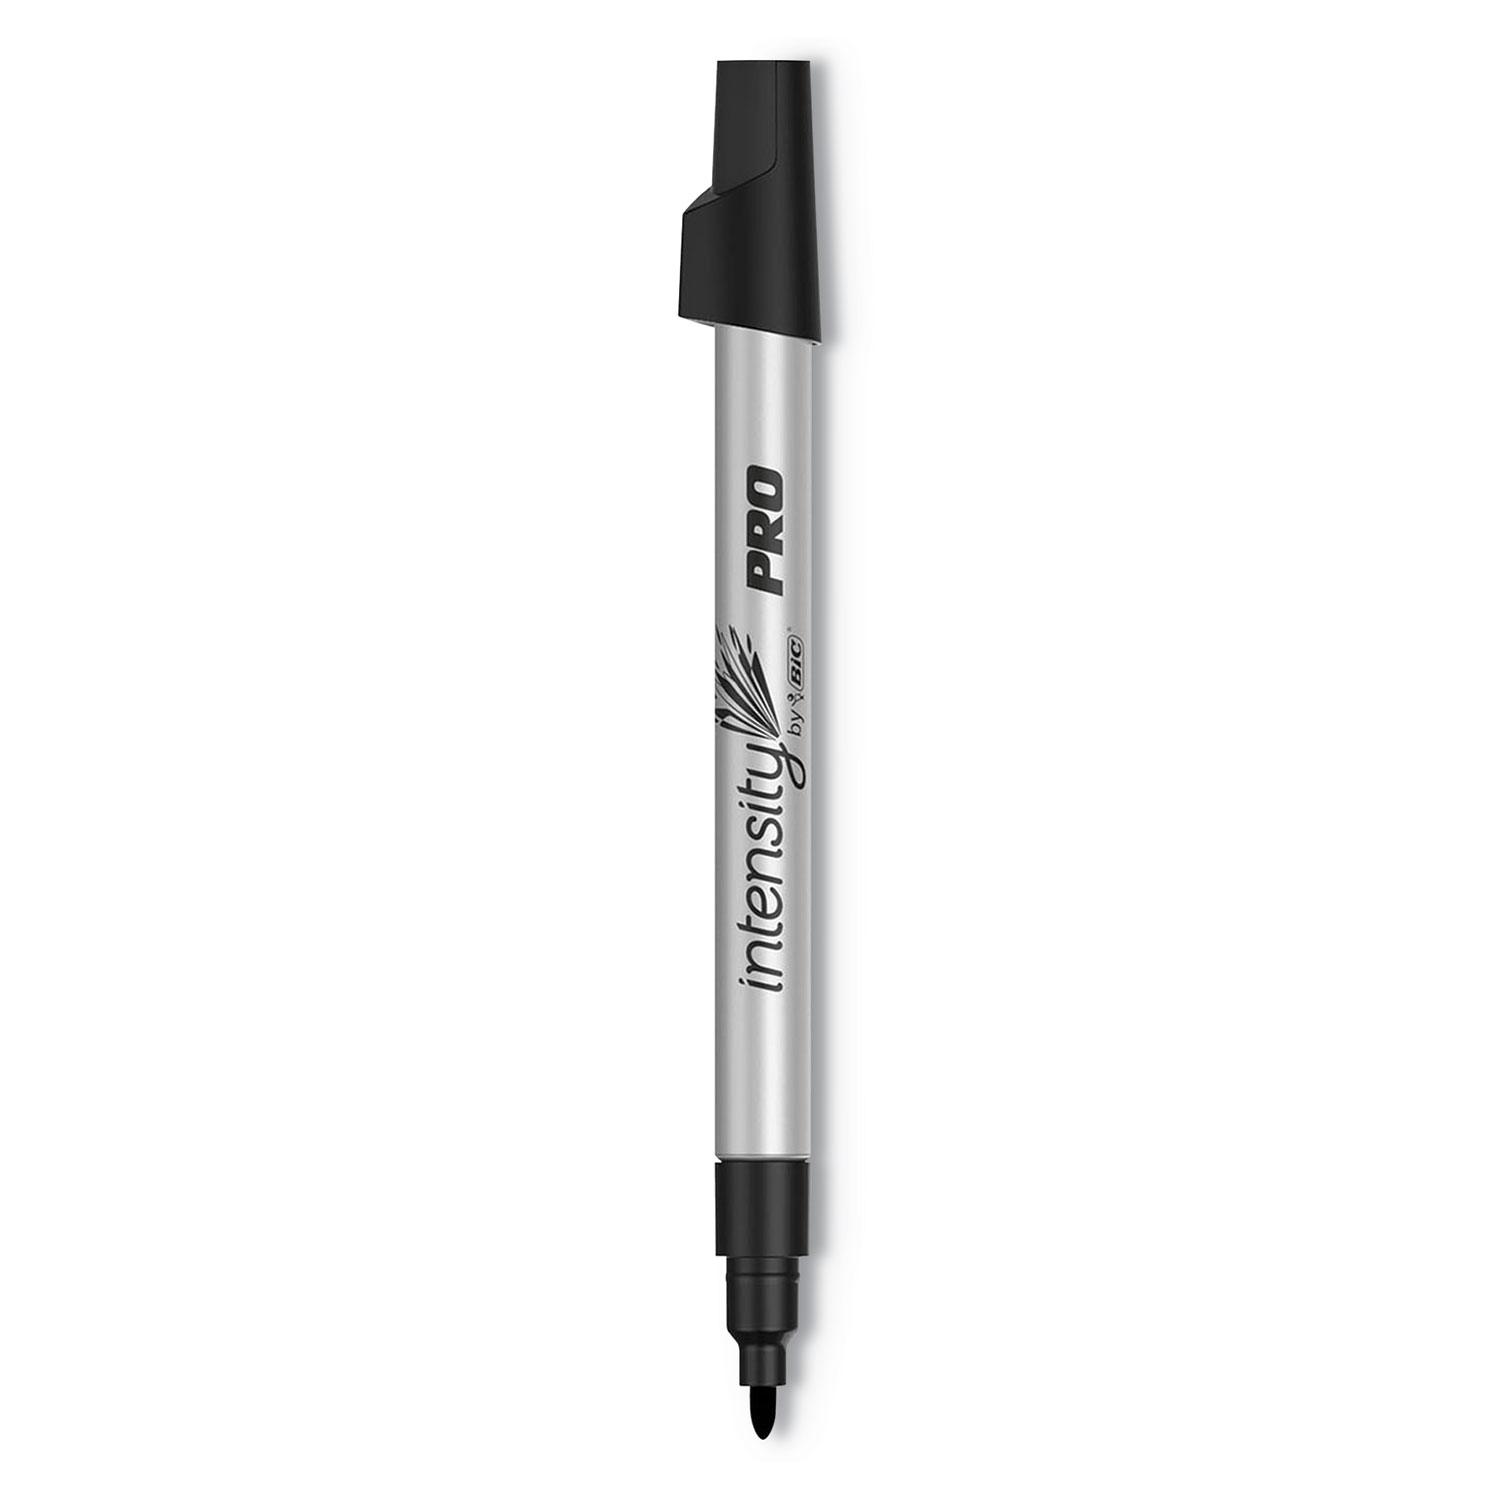 Bic Intensity Permanent Marker Pen .5mm Fine Black Dozen FPIN11BK